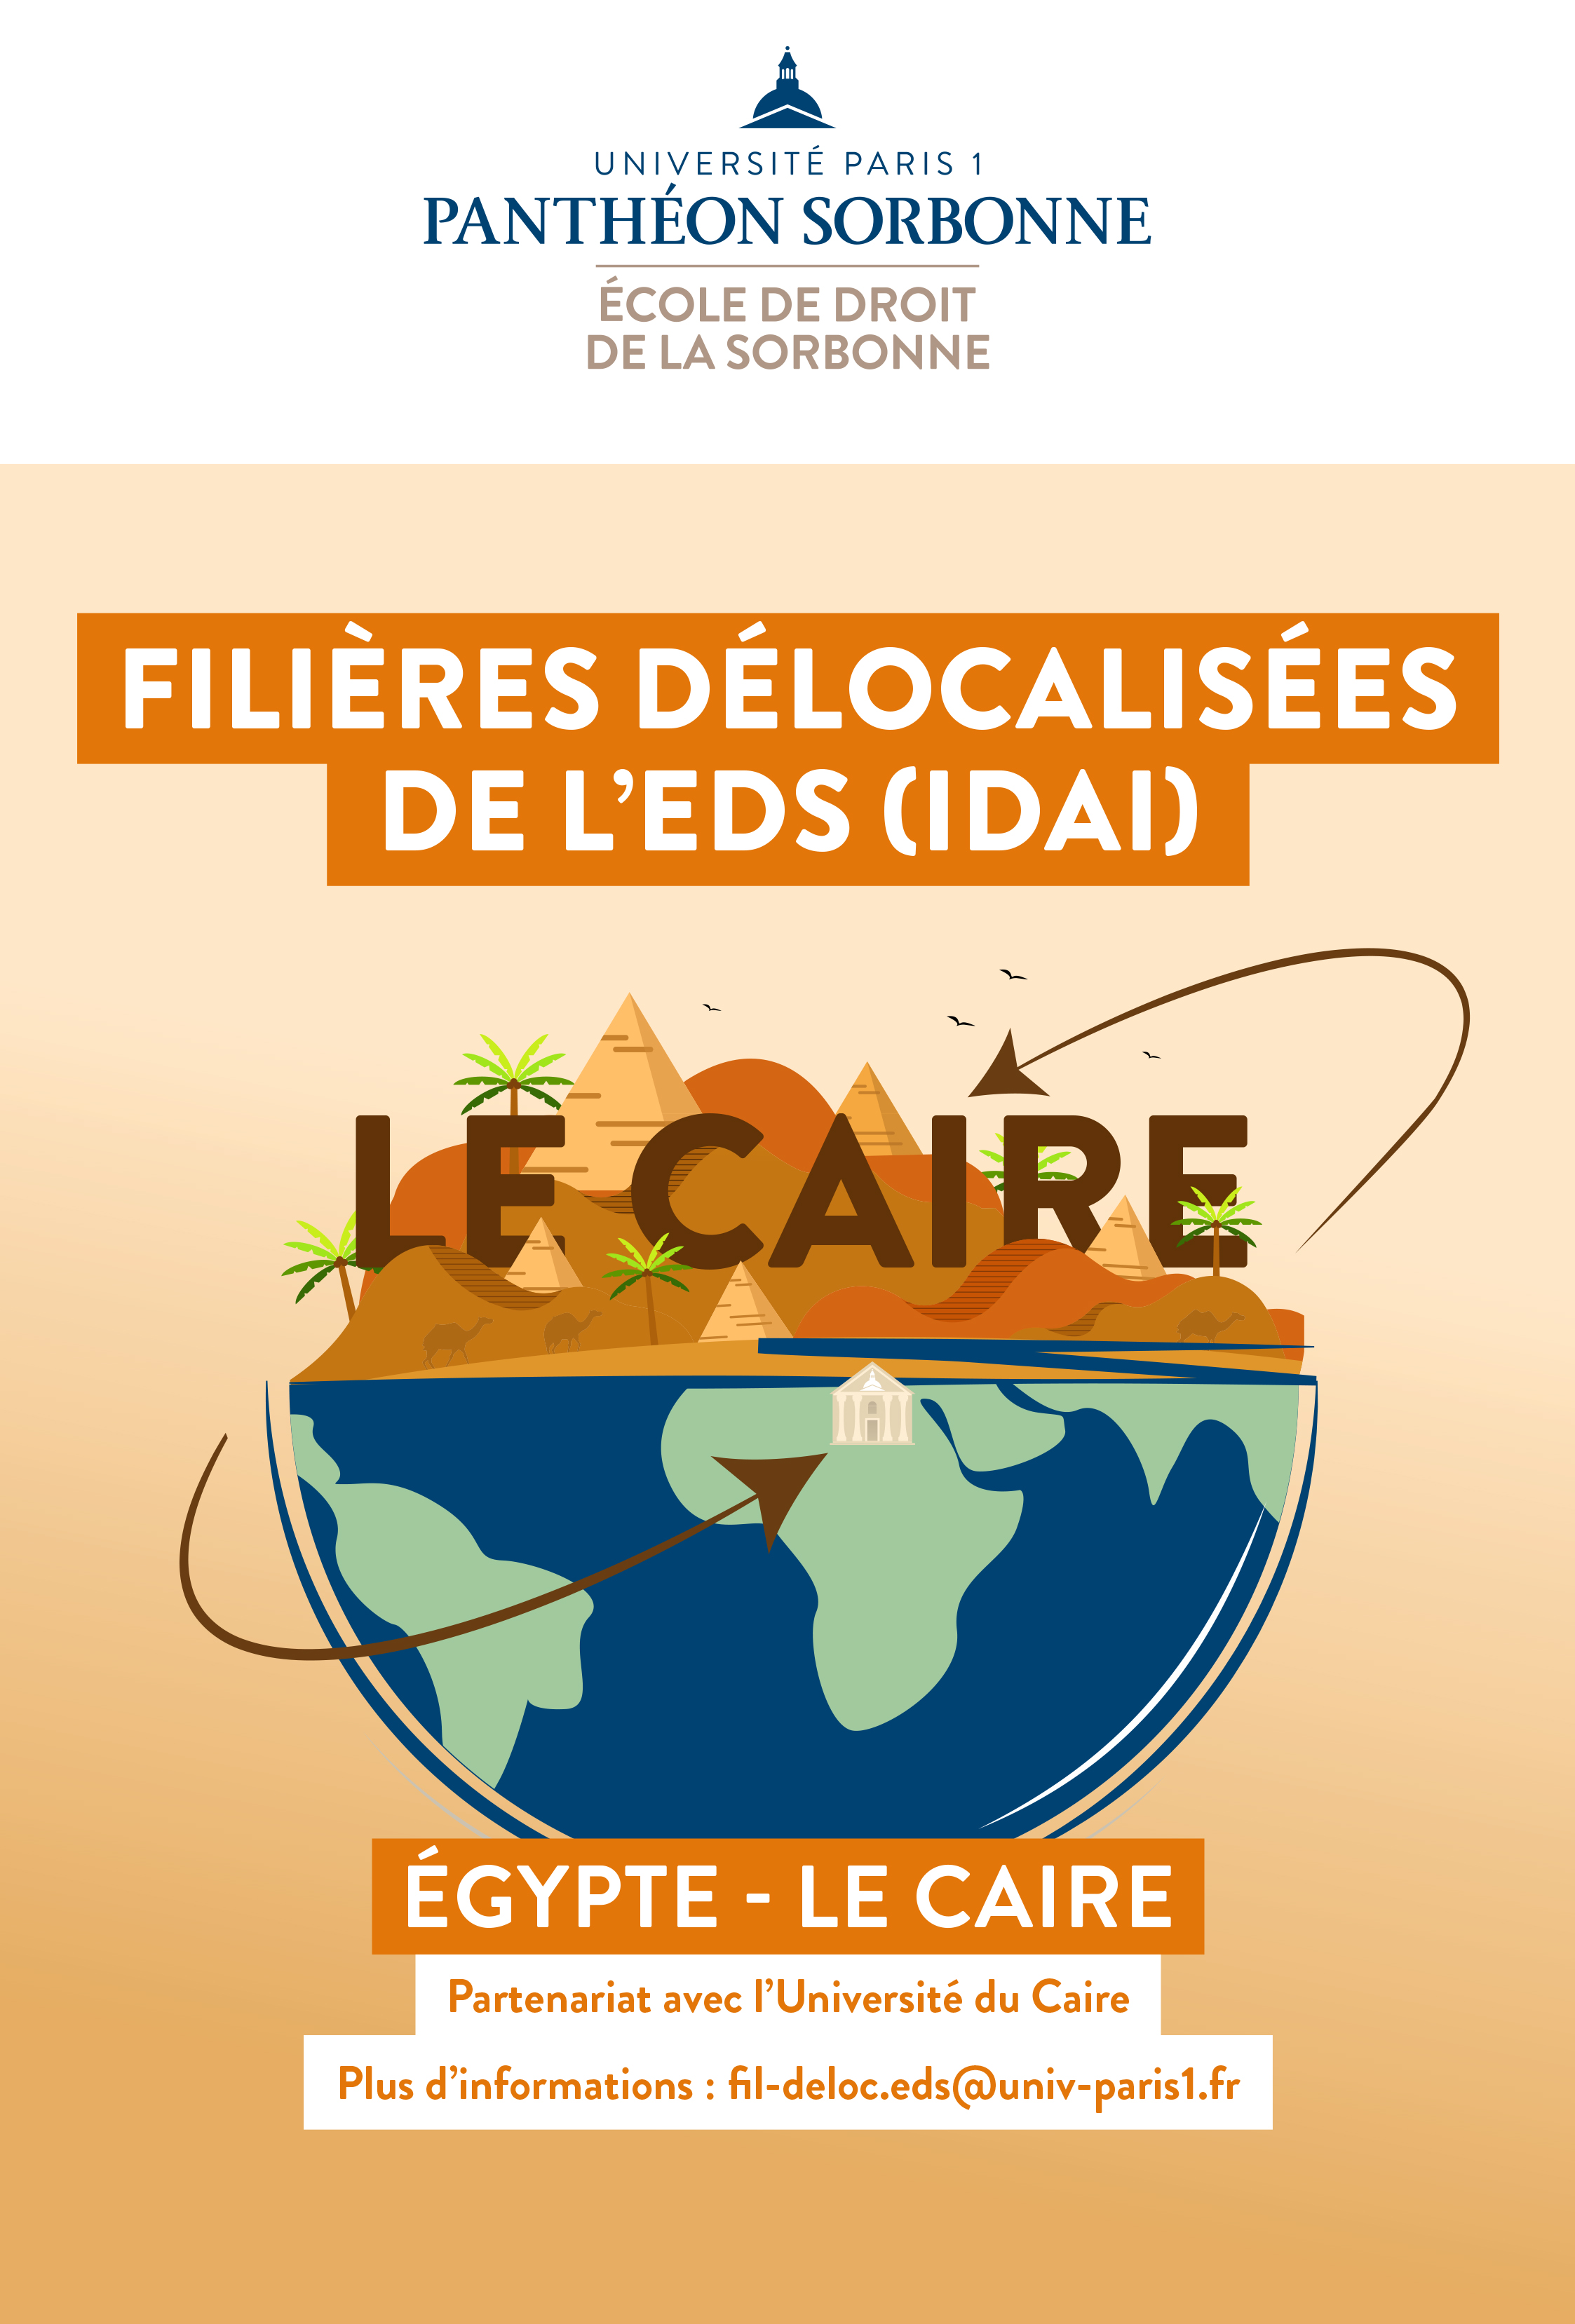 Filières délocalisées de l'EDS (IDAI) - Egypte Le Caire - Partenariat avec l'Université du Caire. Plus d'informations : fil-deloc.eds@univ-paris1.fr